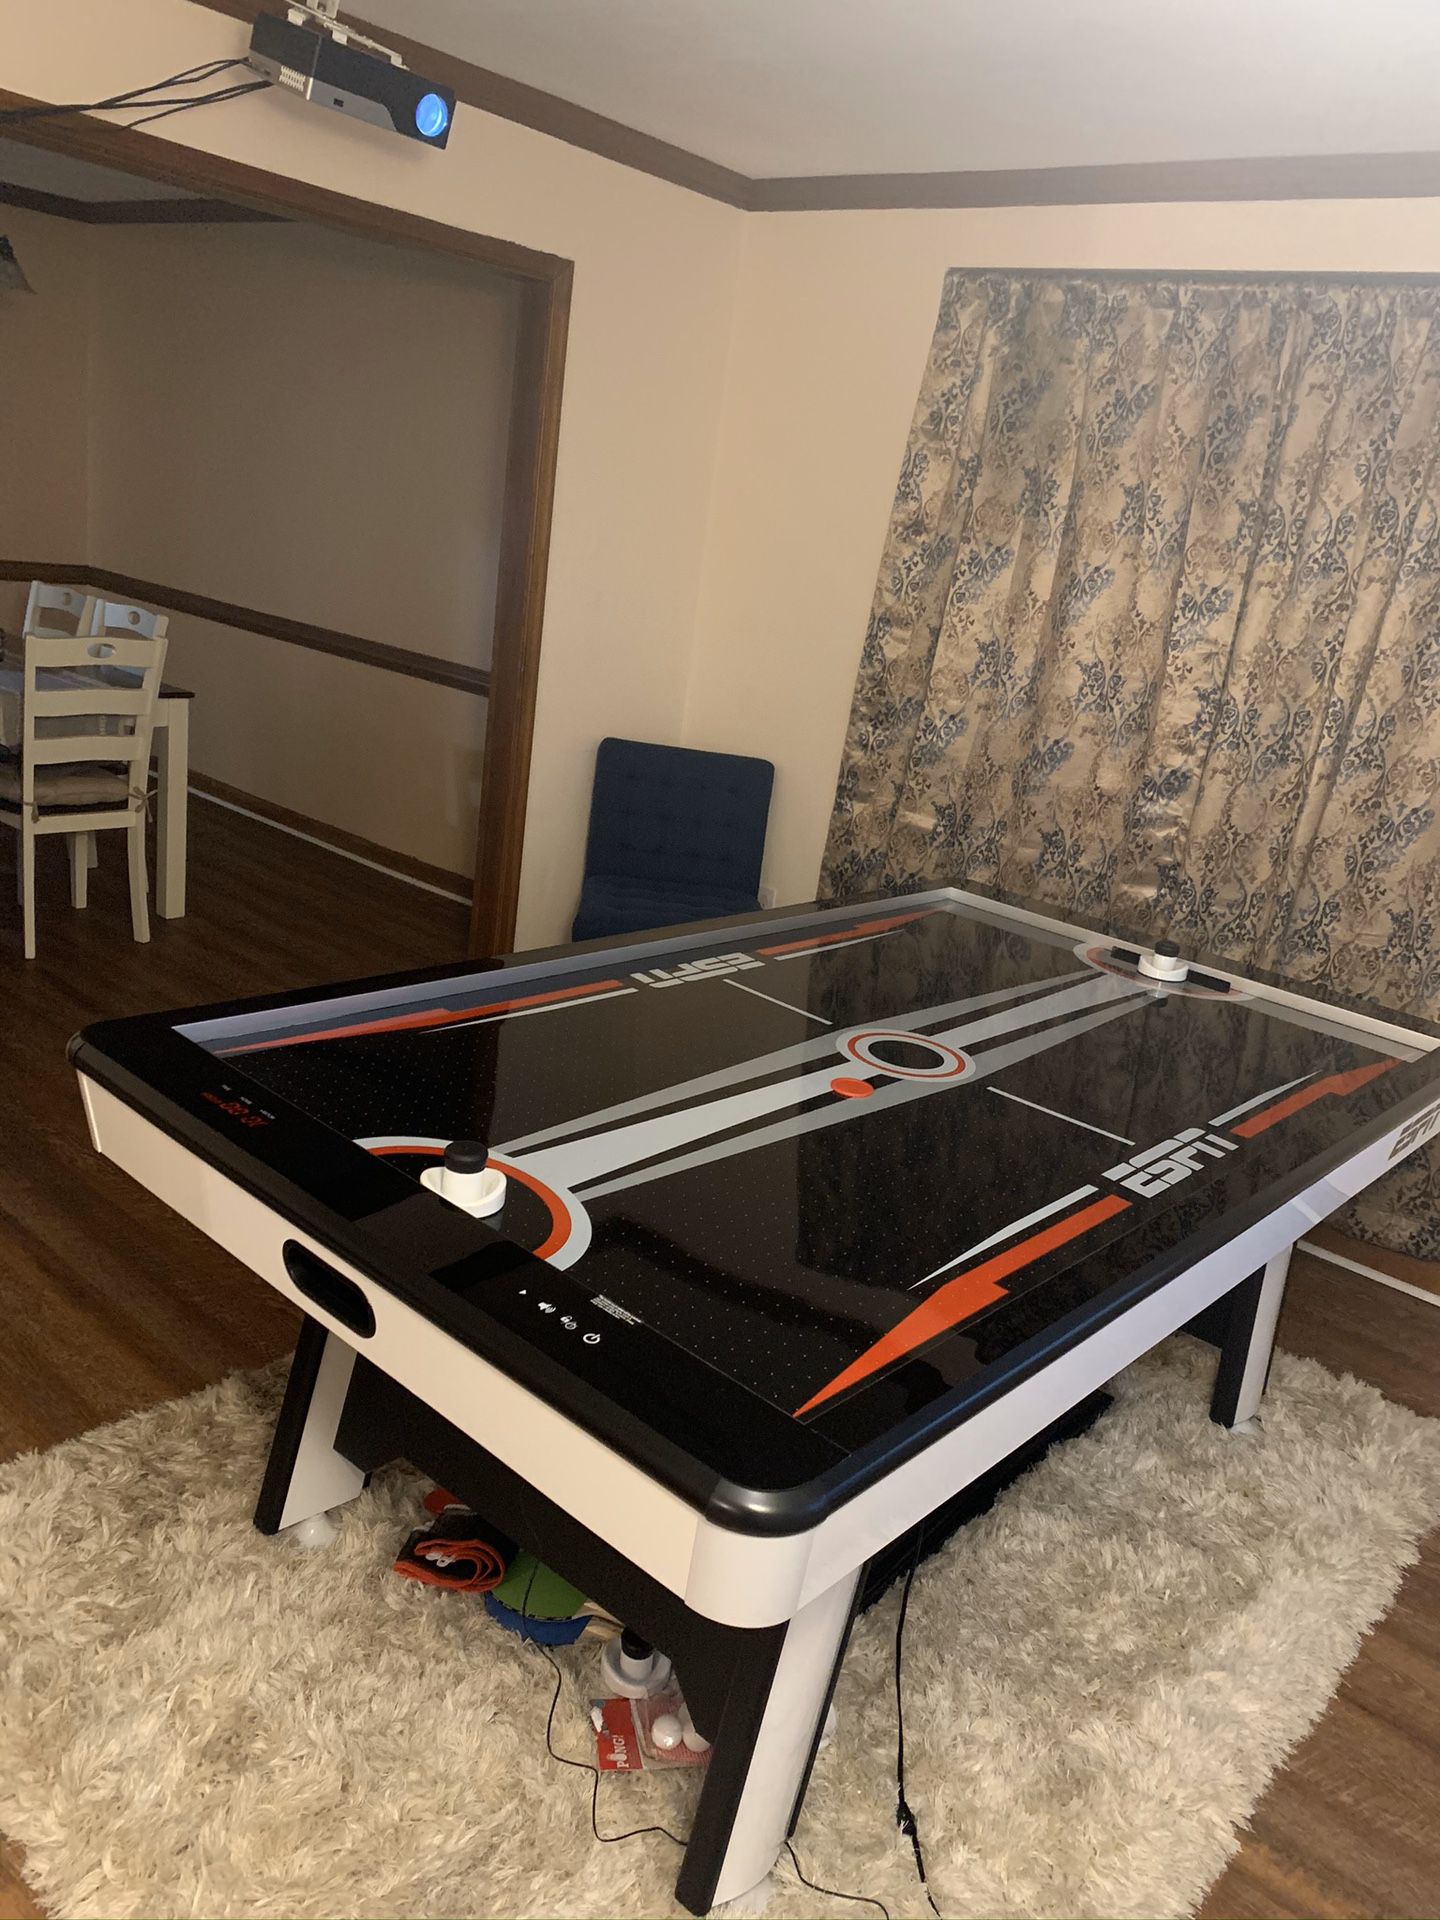 ESPN air hockey table with table tennis